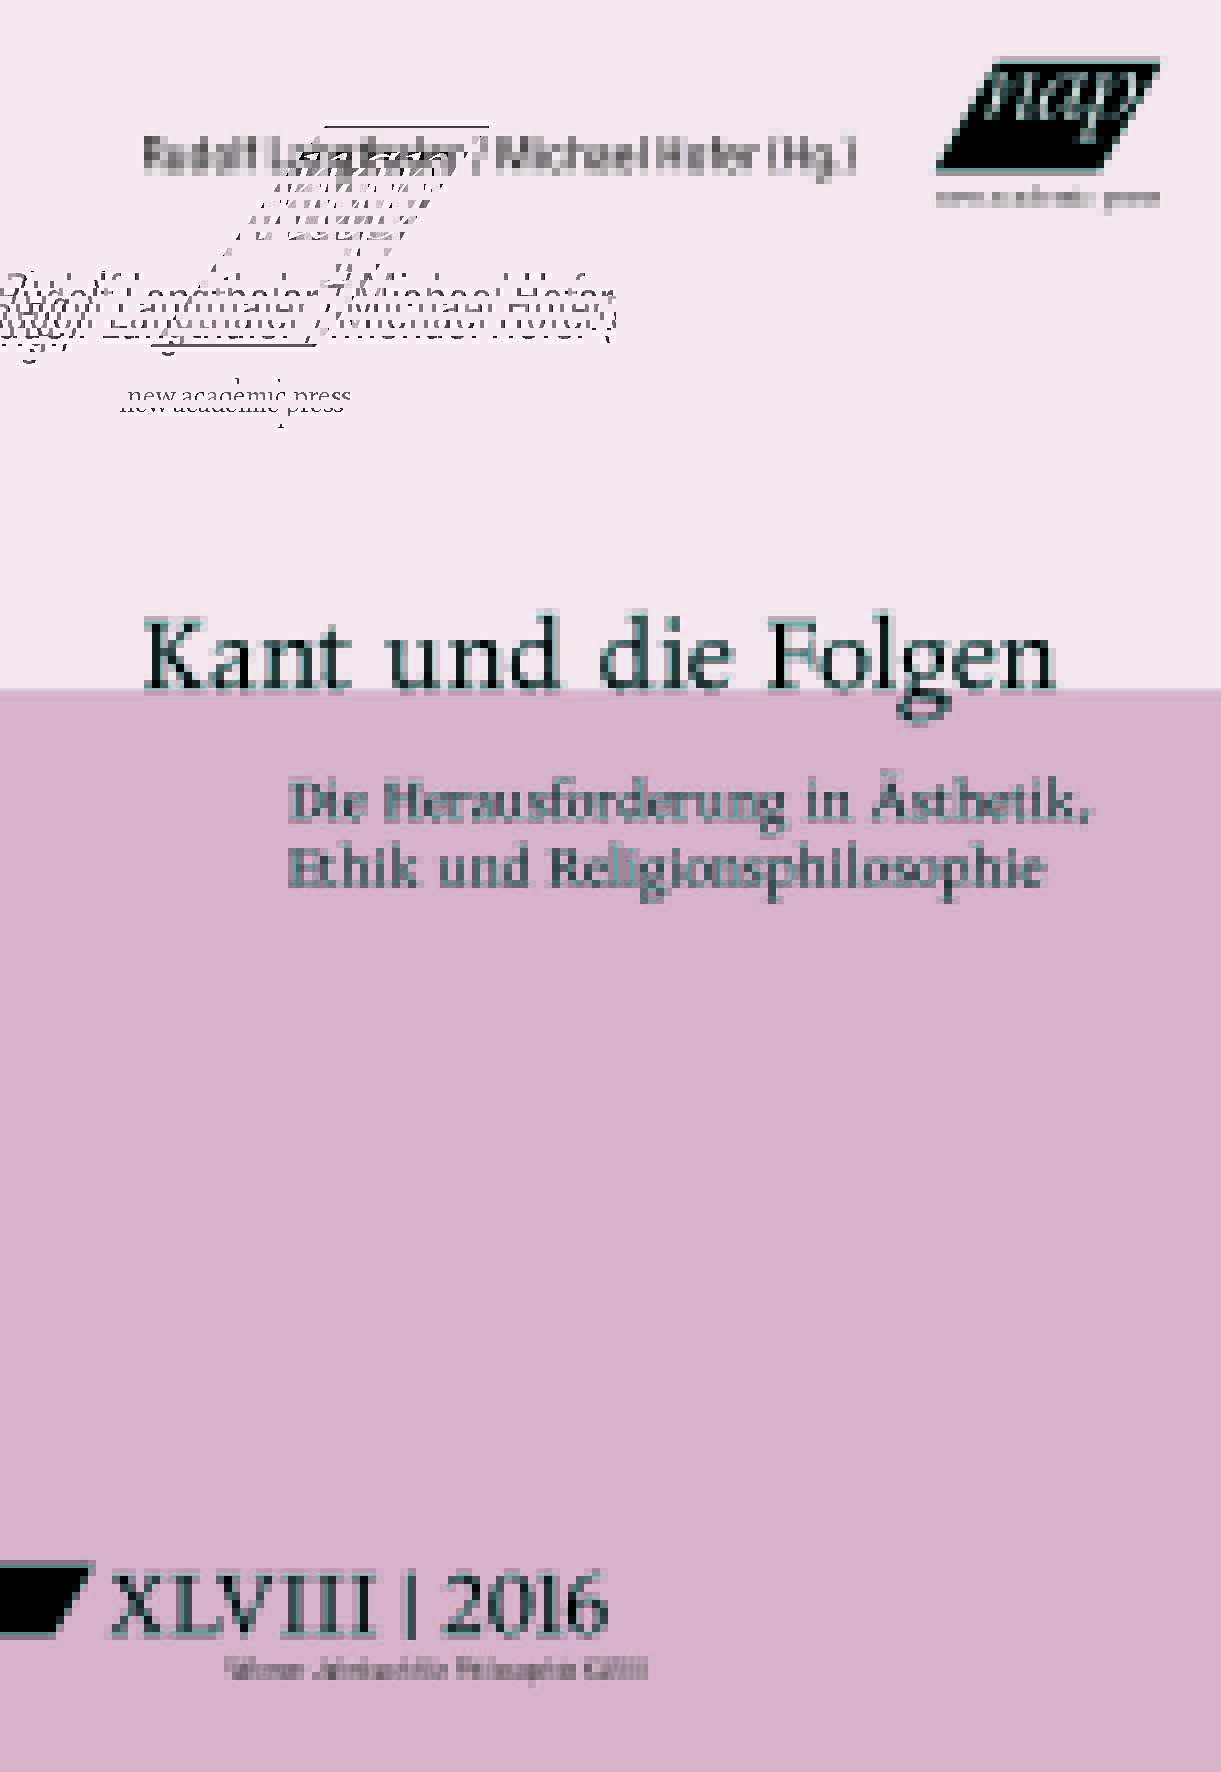 Cover Wiener Jahrbuch Philosophie Band 48 2016 zu Kant und die Folgen